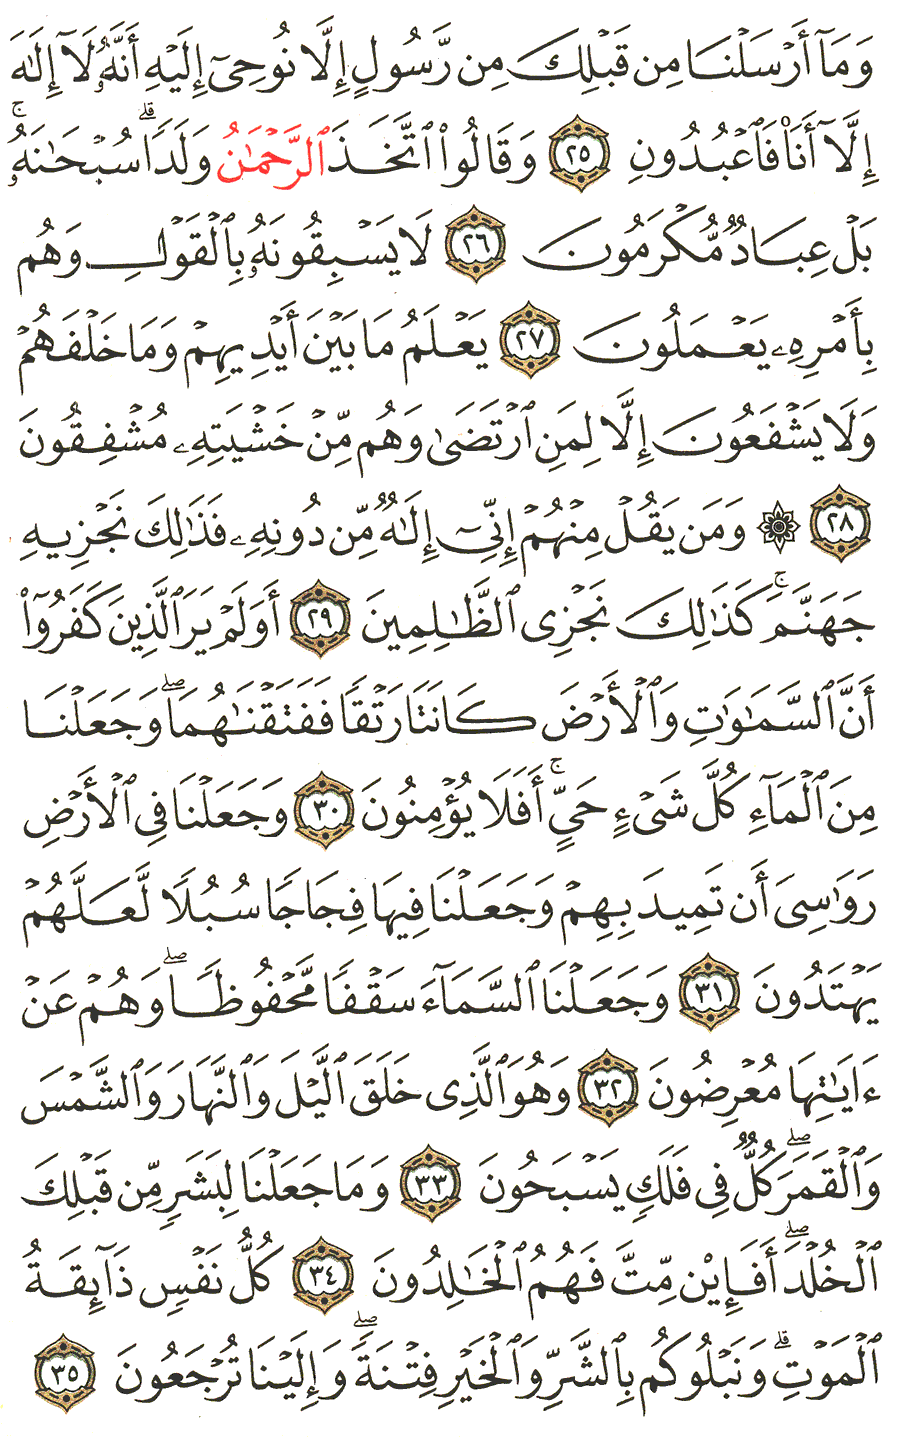 الصفحة 324 من القرآن الكريم